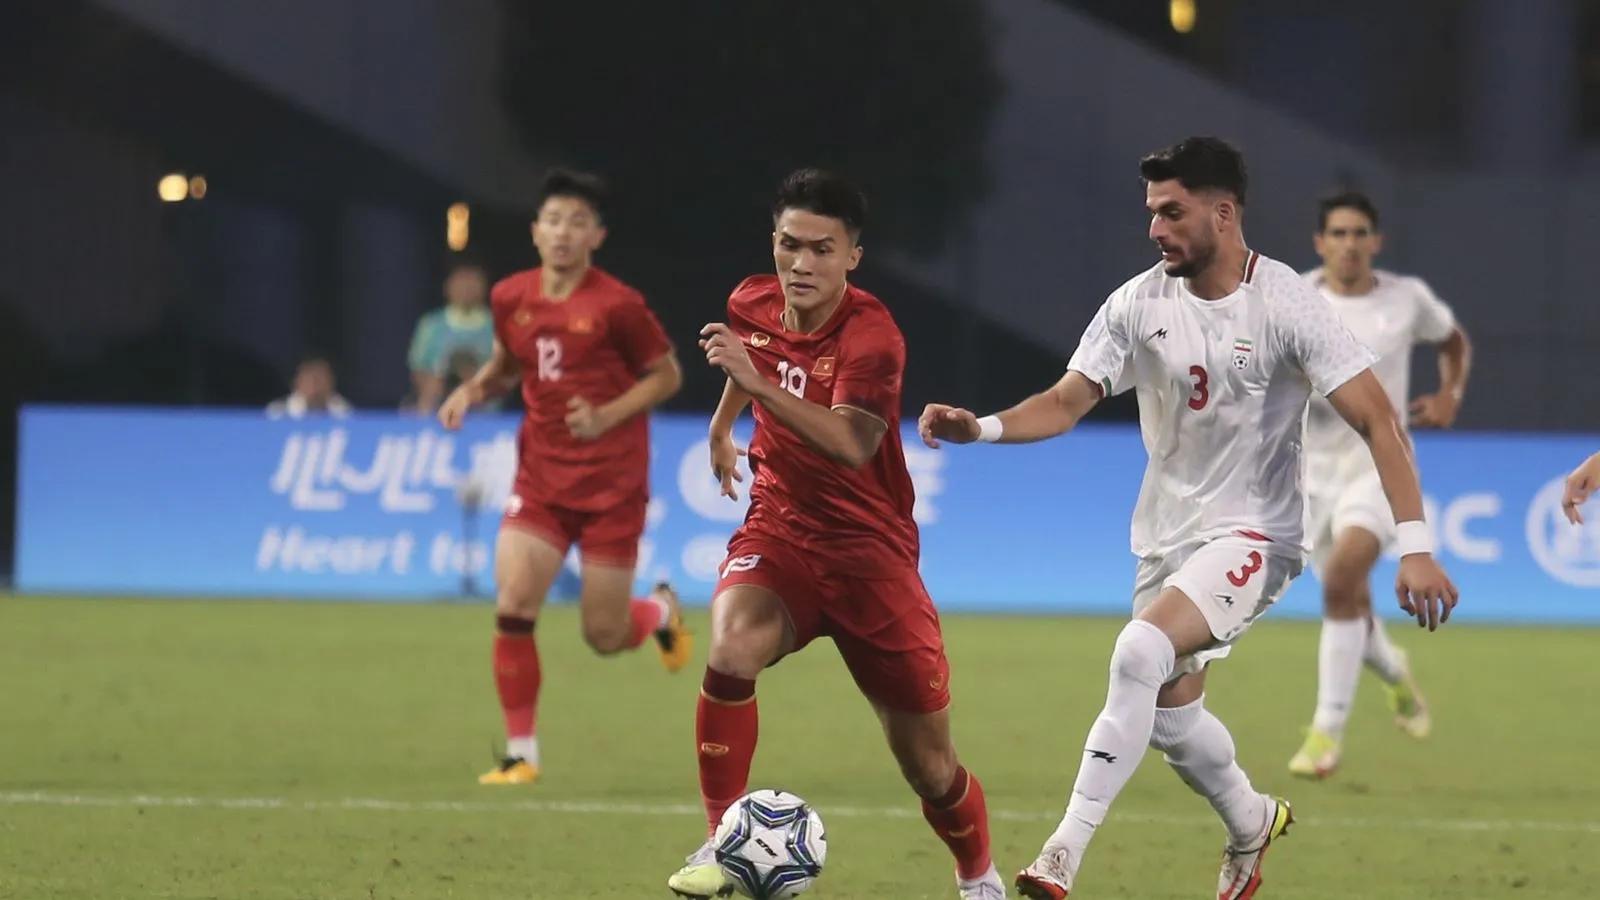 TRỰC TIẾP Olympic Việt Nam 0-0 Olympic Ả Rập Saudi (H1): Trận đấu bắt đầu